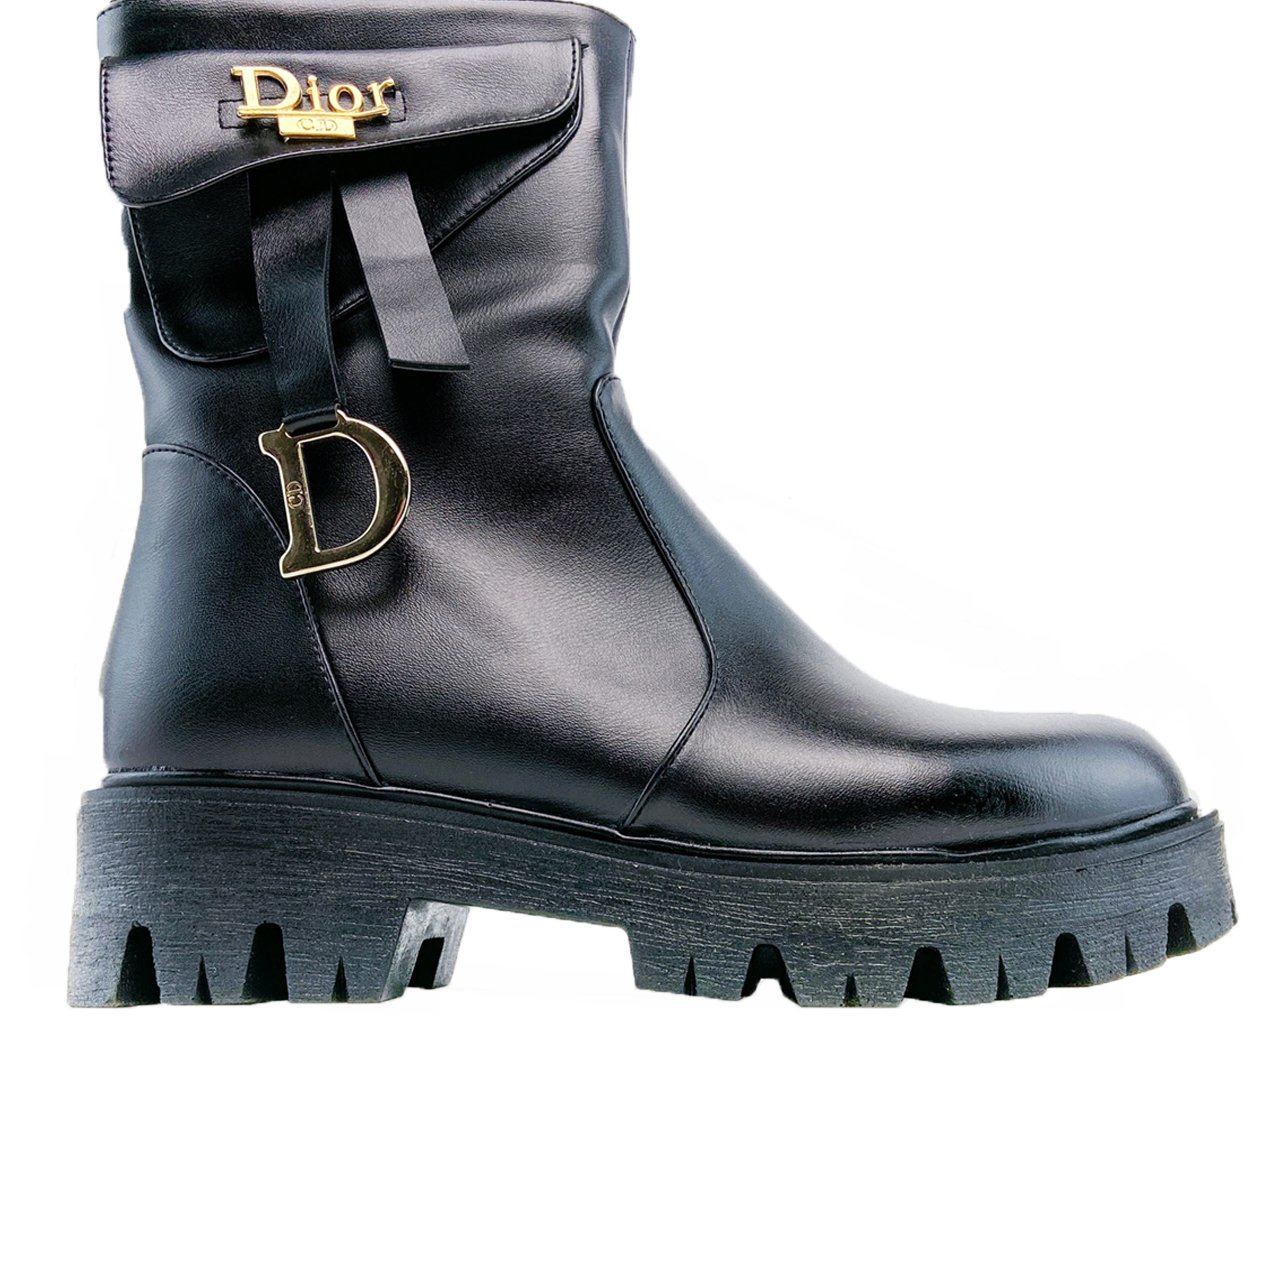 Dior empreinte ankle boots - DIOR